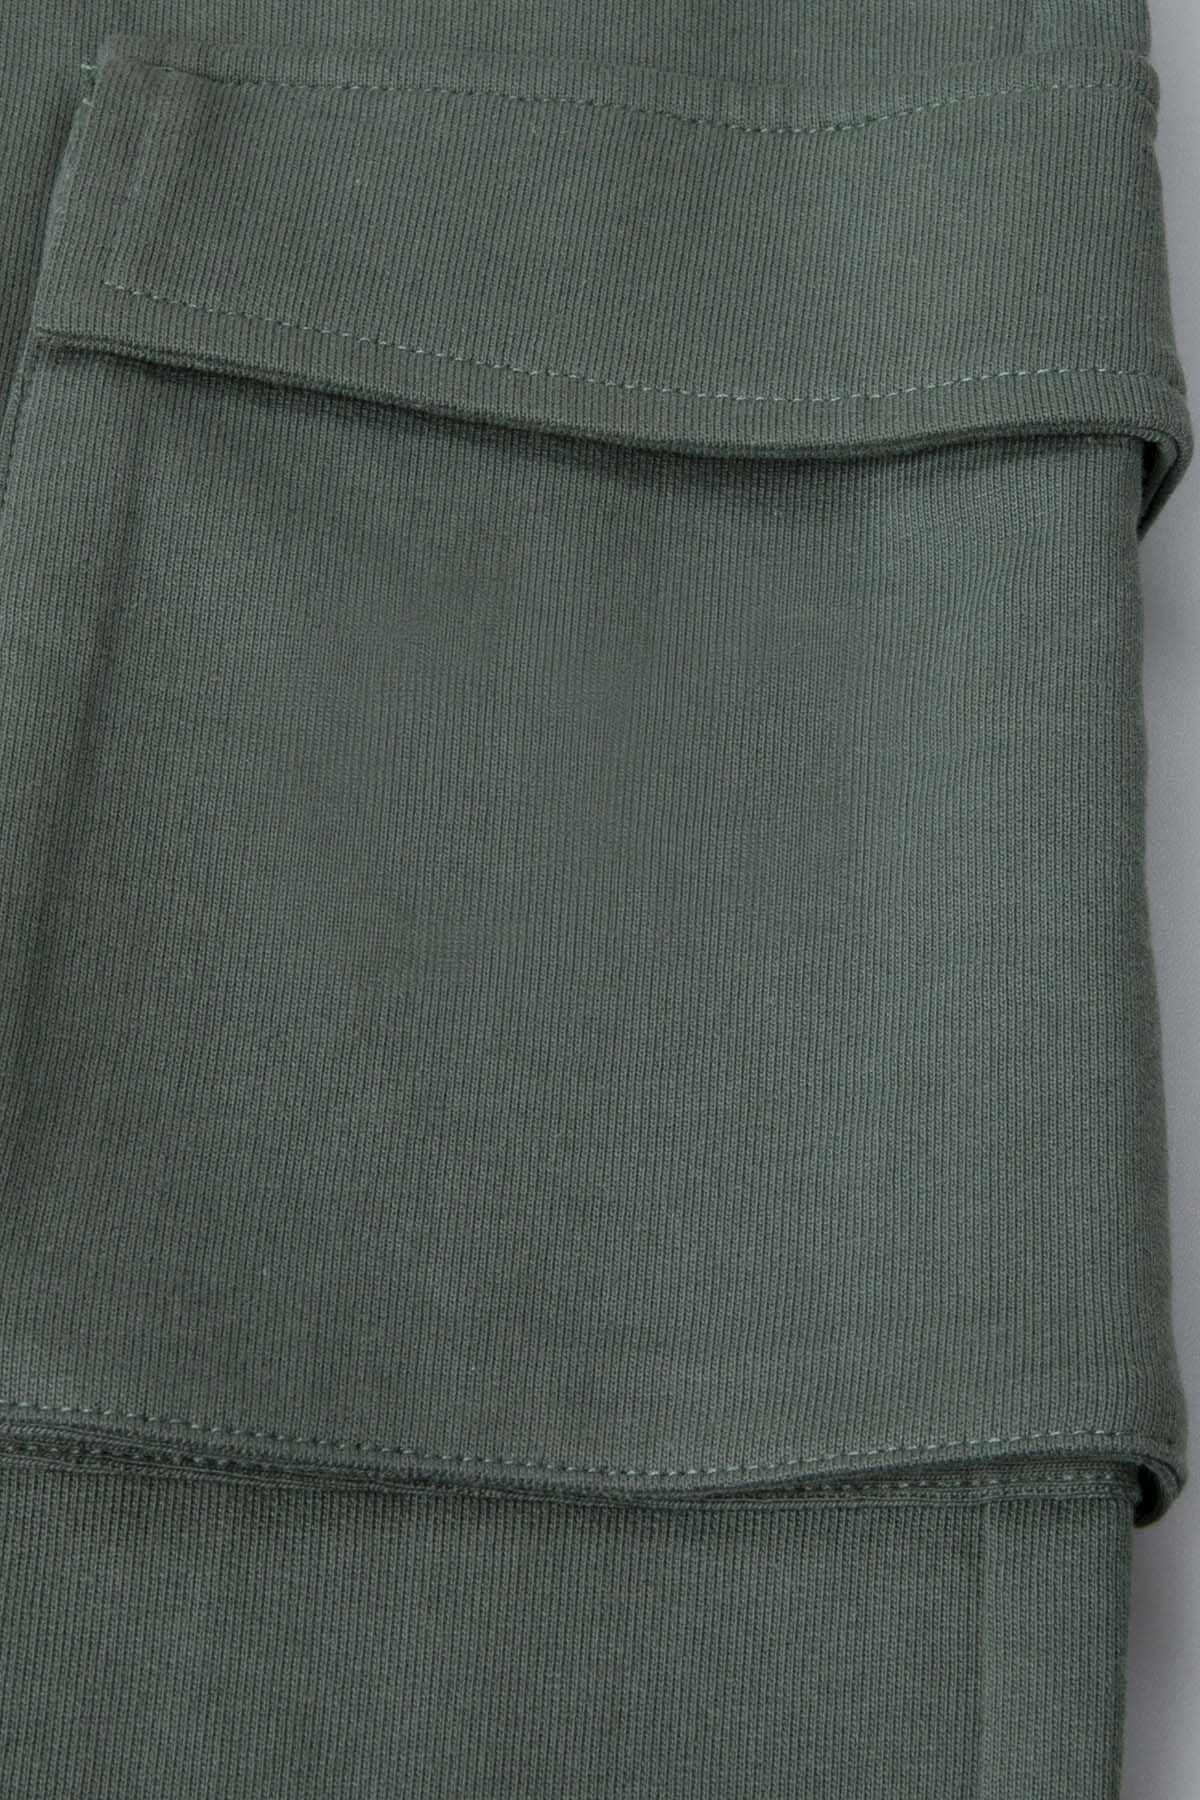 Spodnie dresowe zielone z kieszeniami i przeszyciami na nogawkach o fasonie REGULAR 2226349